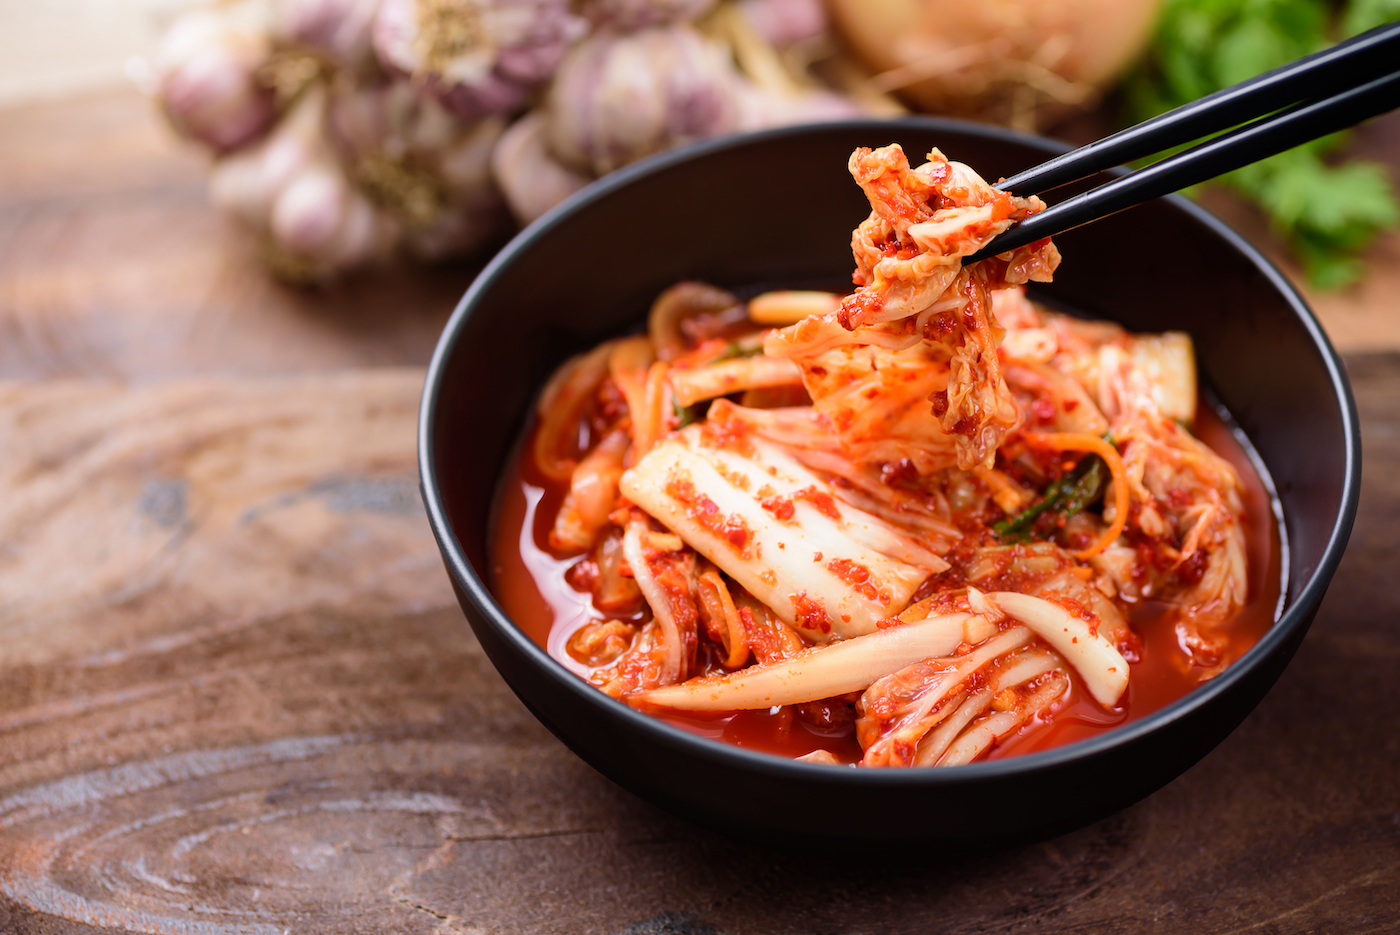 Koreaanse kimchi, gefermenteerde kool in een rode pasta.